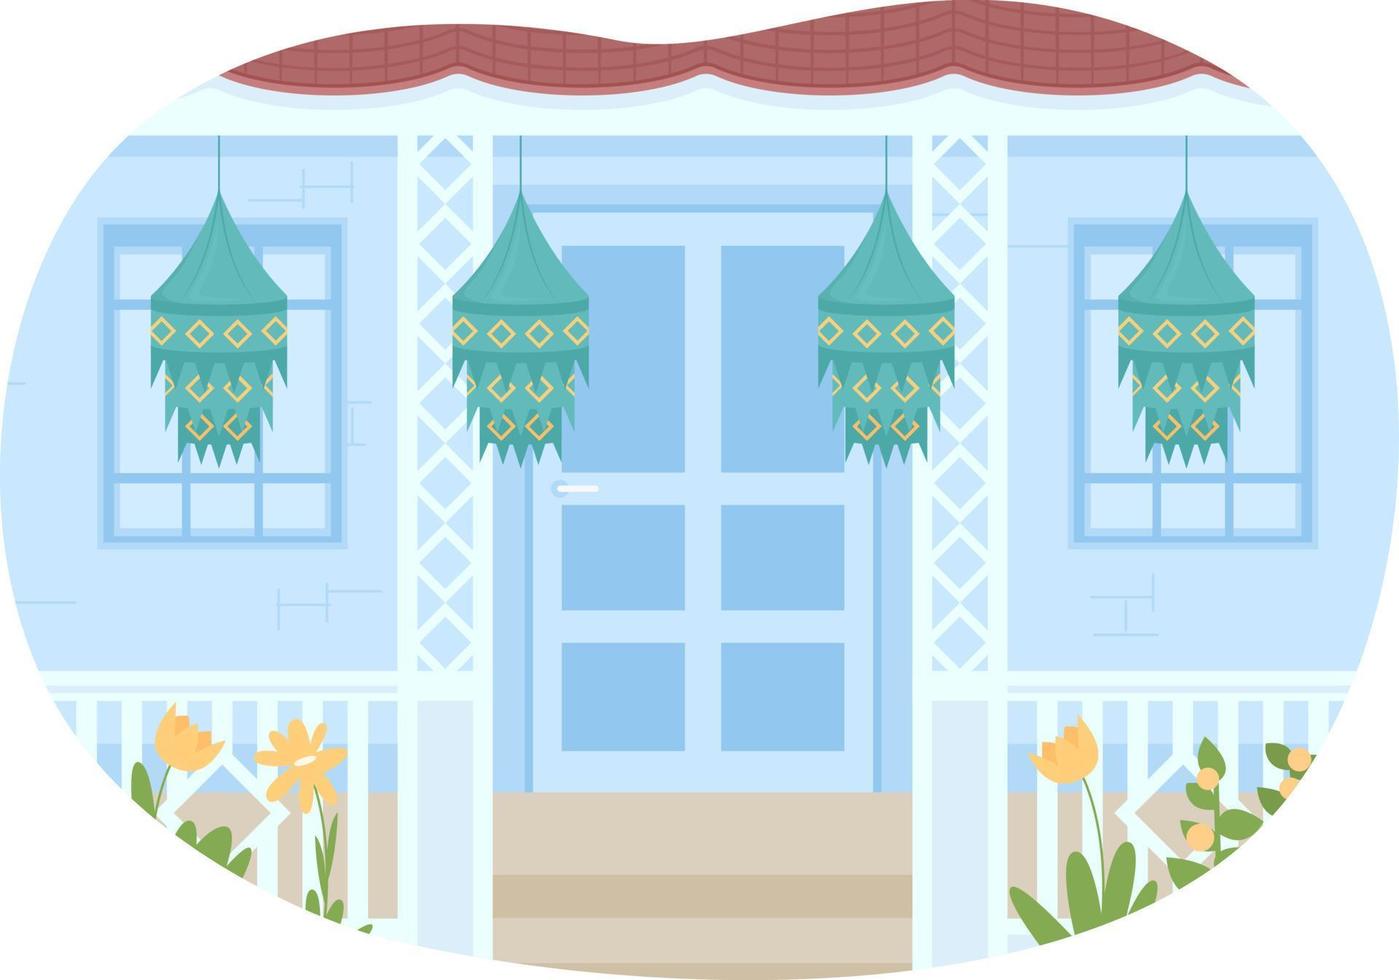 casa de decoração para ilustração isolada em vetor diwali 2d. pendurando lanternas de papel ao ar livre exterior de casa plana no fundo dos desenhos animados. cena editável colorida para celular, site, apresentação